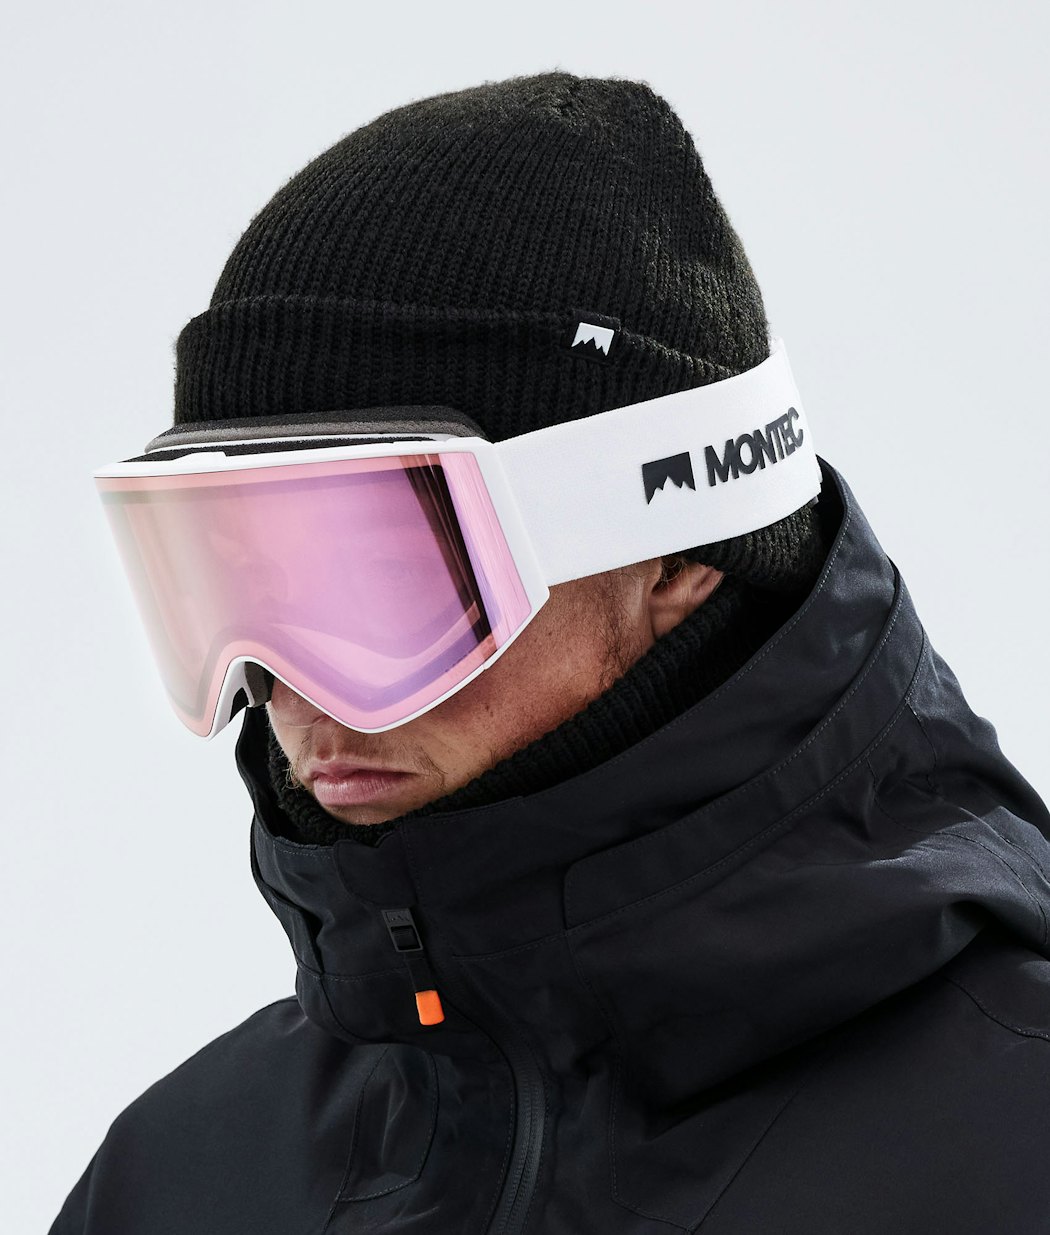 Montec Scope Men's Ski Goggle White/Pink Sapphire Mirror